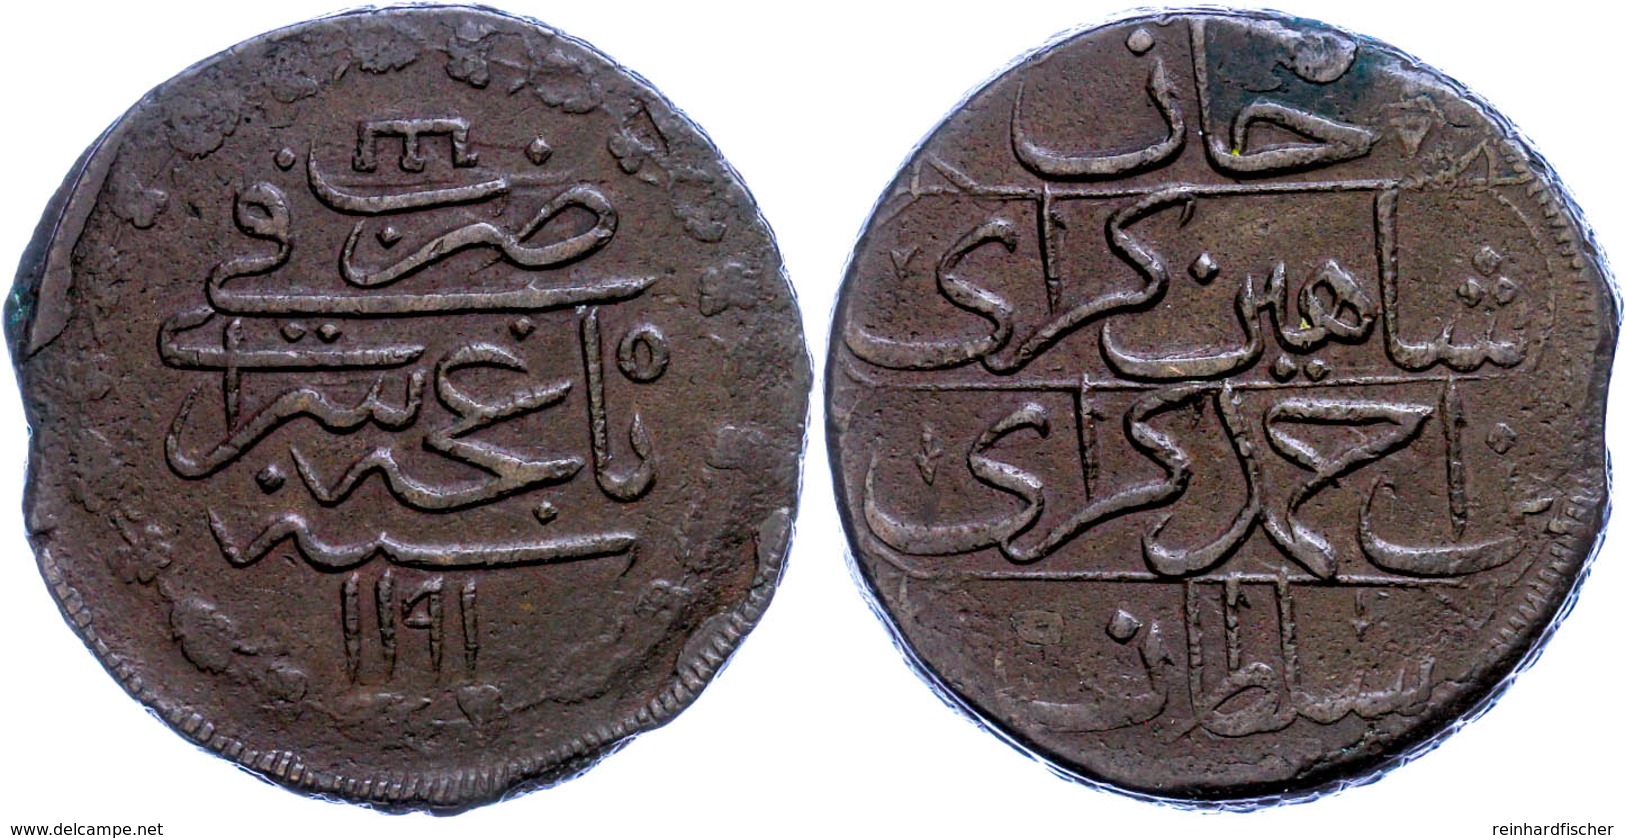 Krim, Kyrmis (51,46g), Kupfer, AH 1191, Jahr 5 (1782), Shahin Giray Bin Ahmad Giray, Bitkin 33, Zainende, Ss.  Ss - Russland